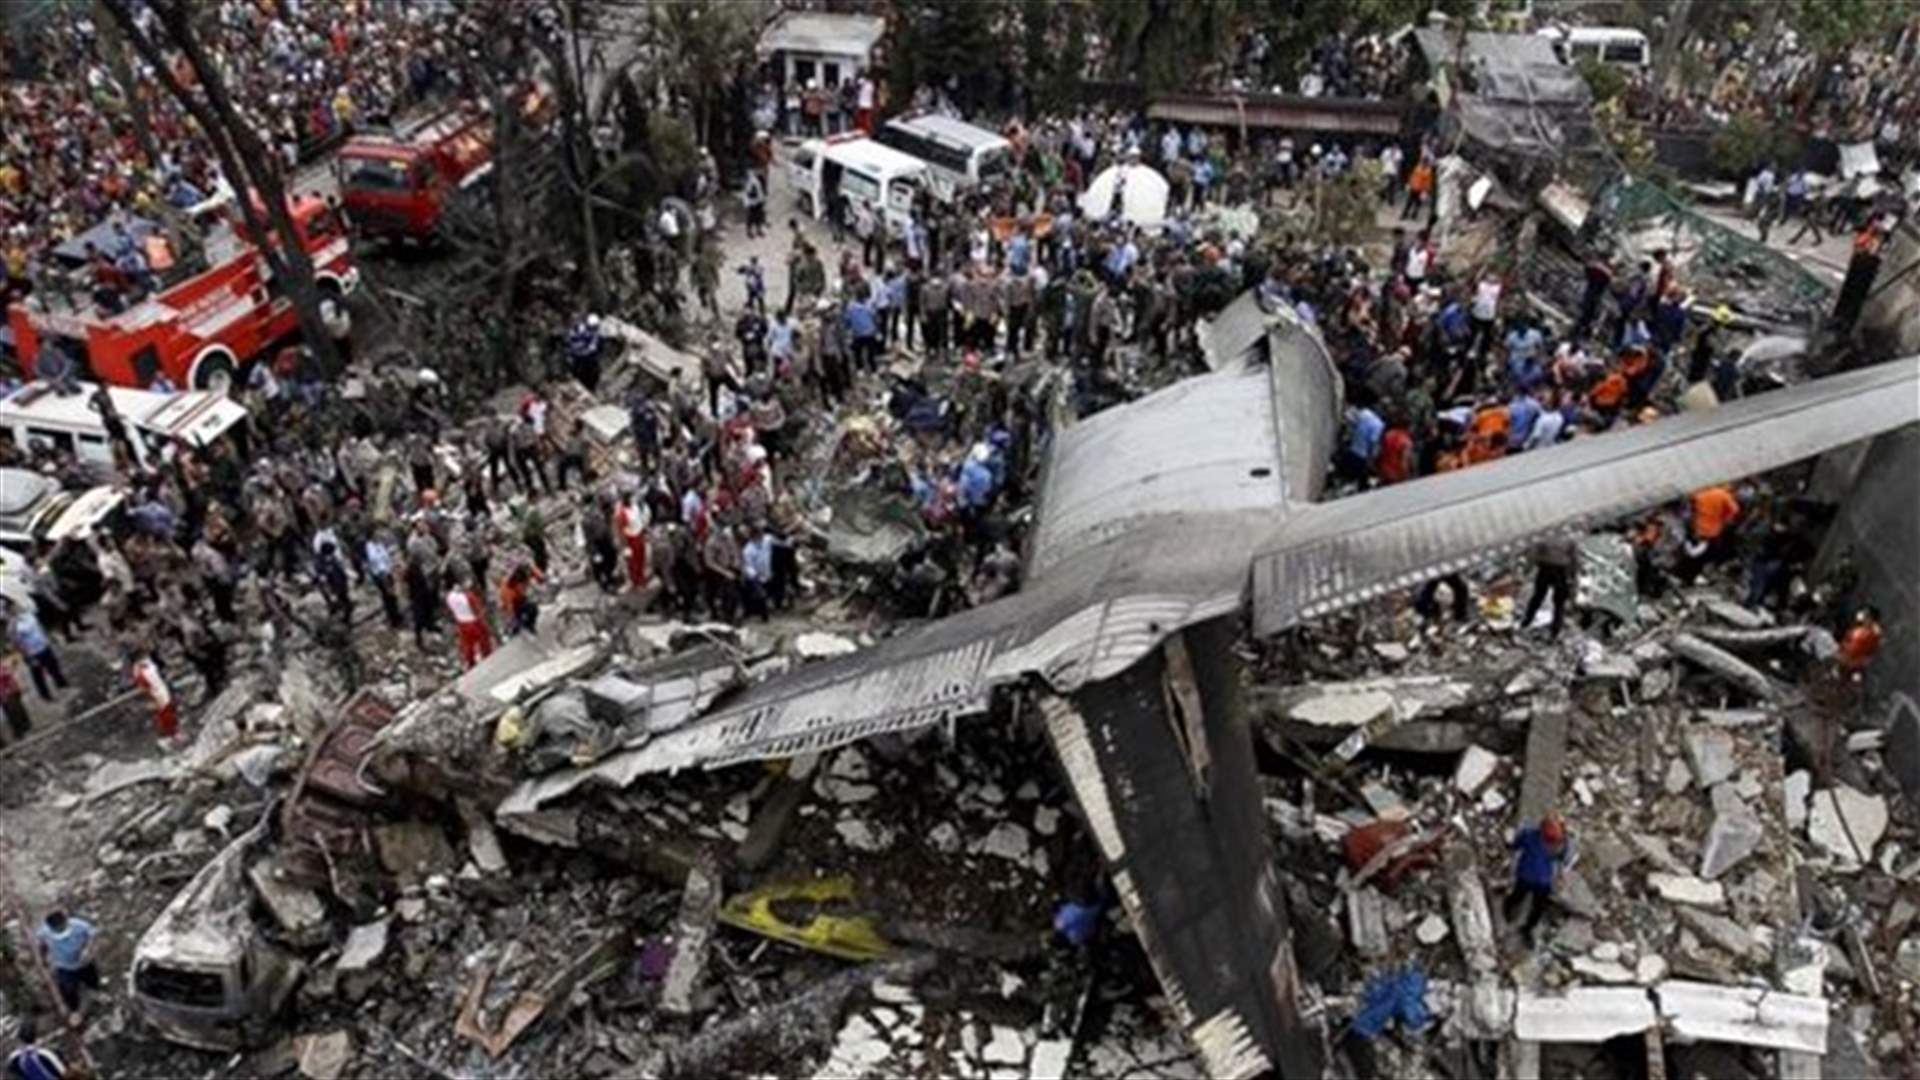 ارتفاع محصلة تحطم طائرة في اندونيسيا الى 141 قتيلا 